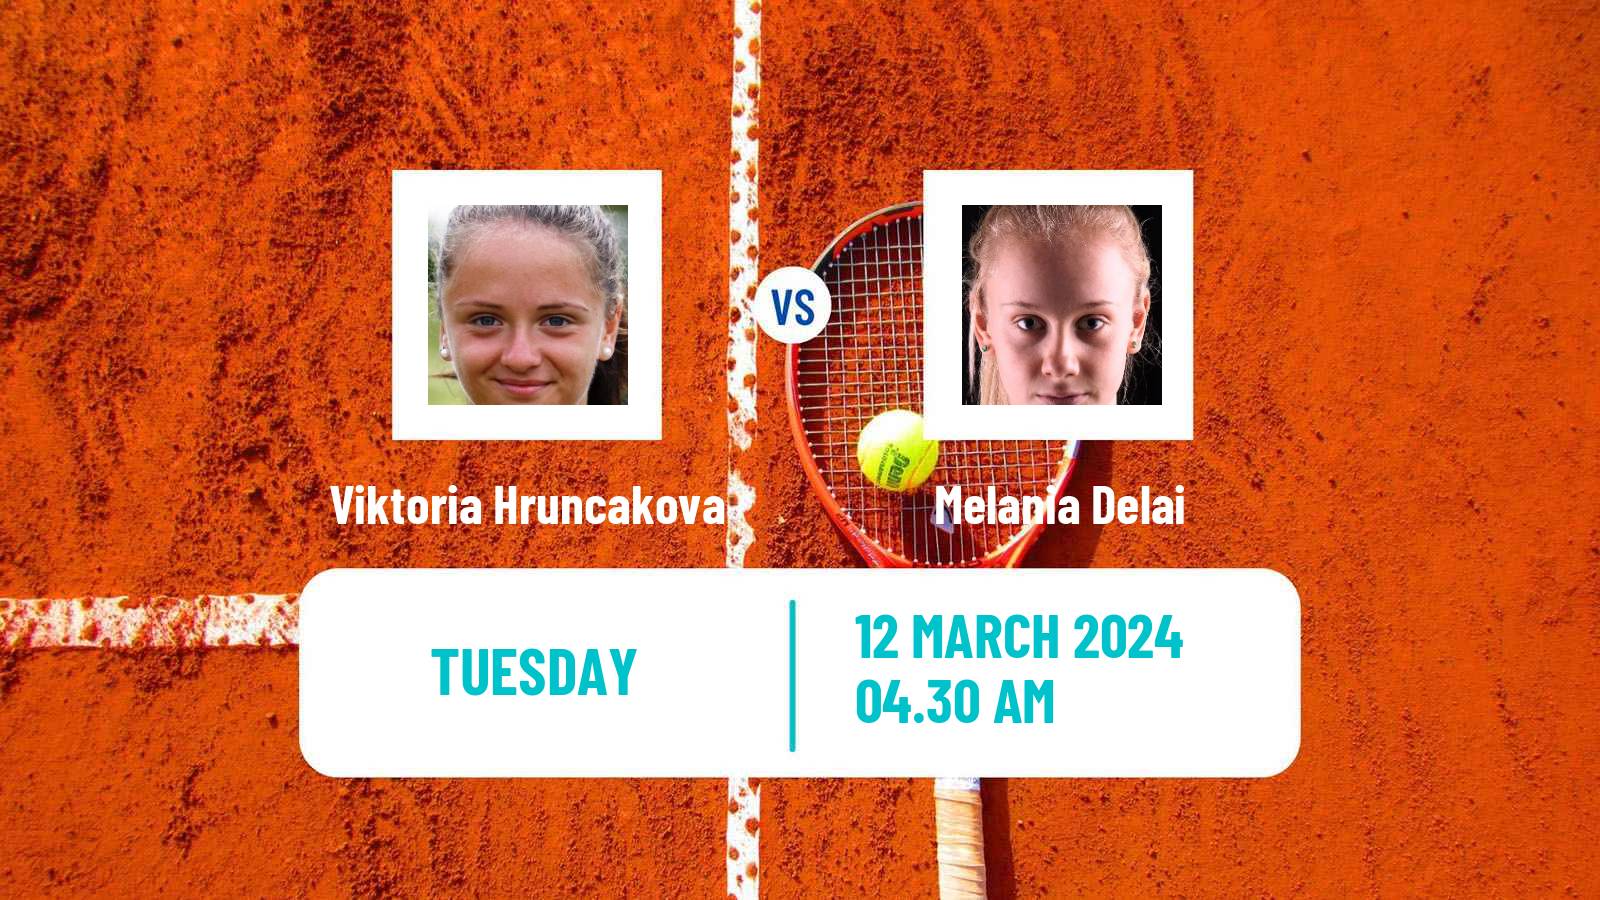 Tennis ITF W35 Solarino 2 Women Viktoria Hruncakova - Melania Delai